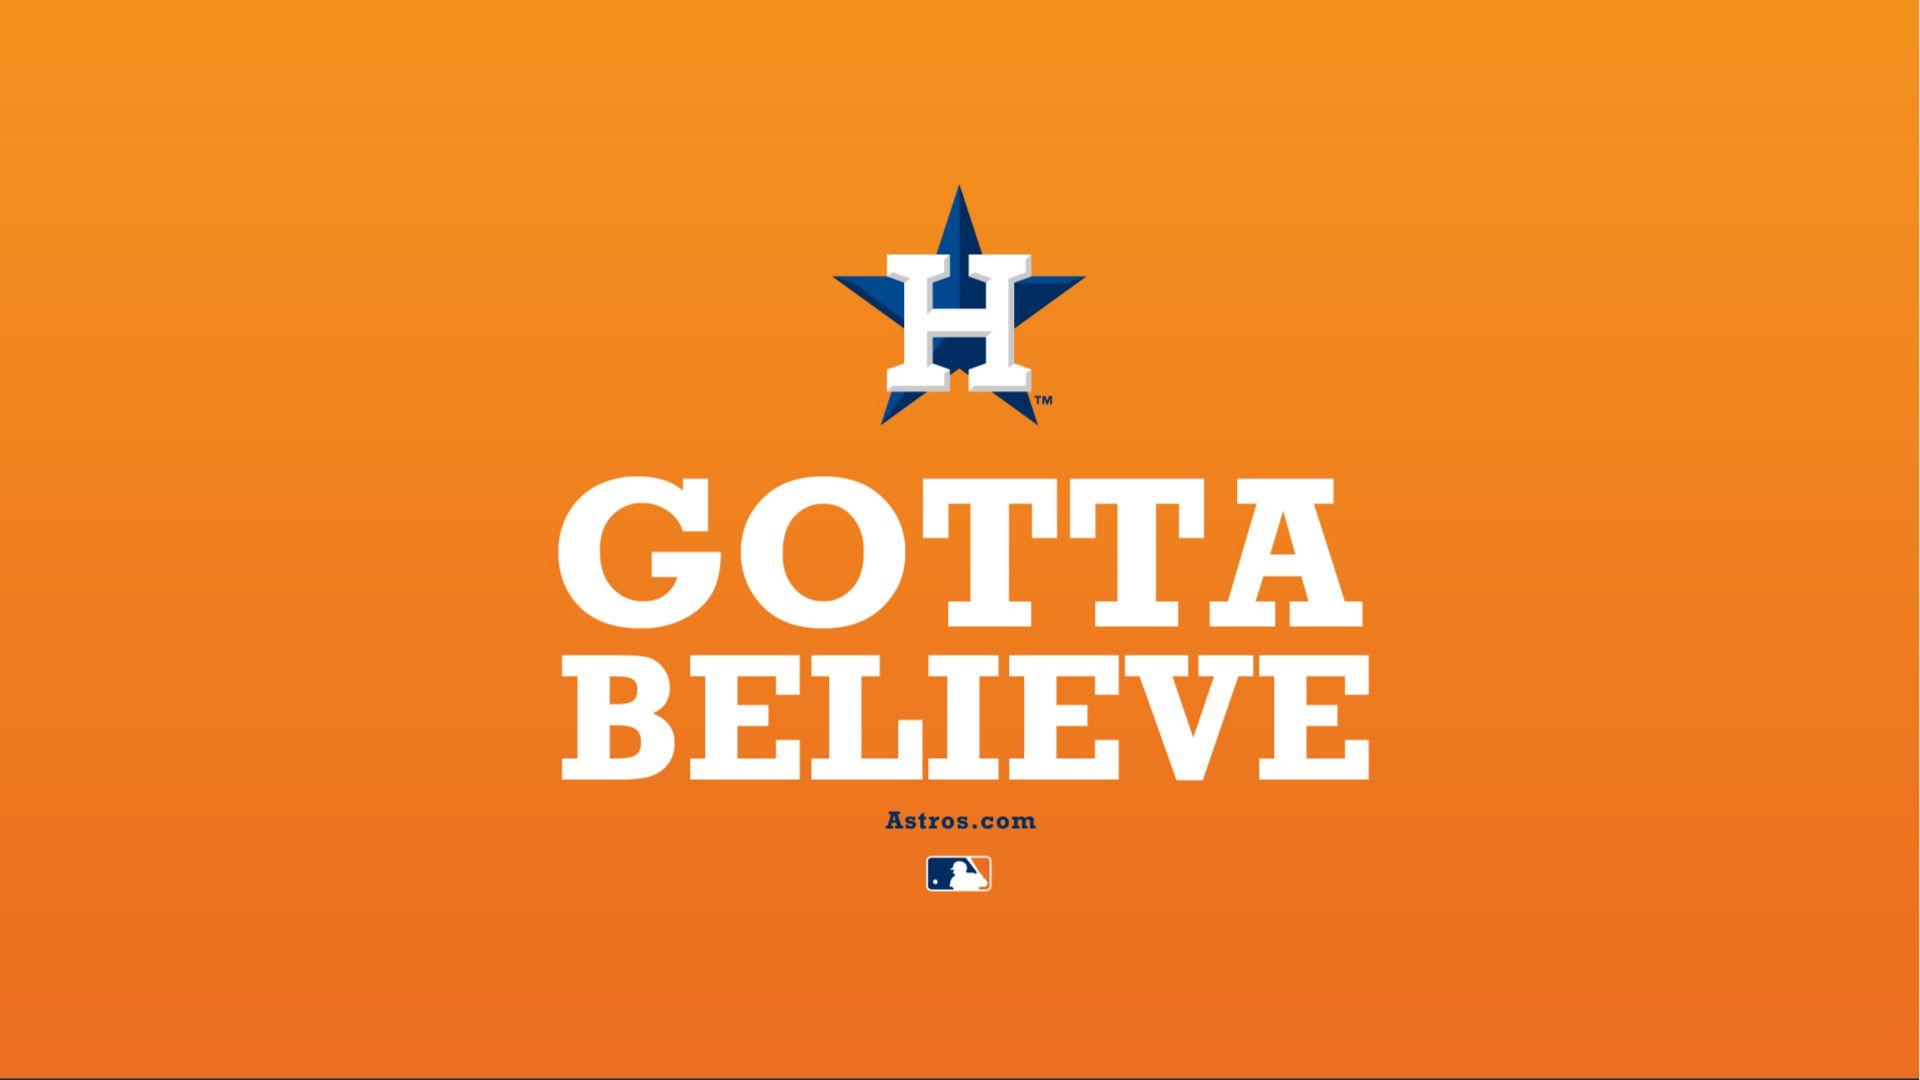 houston astros. Houston Astros Wallpaper, Phone, Tablet. Houston. Balls quote, Believe, Fun sports